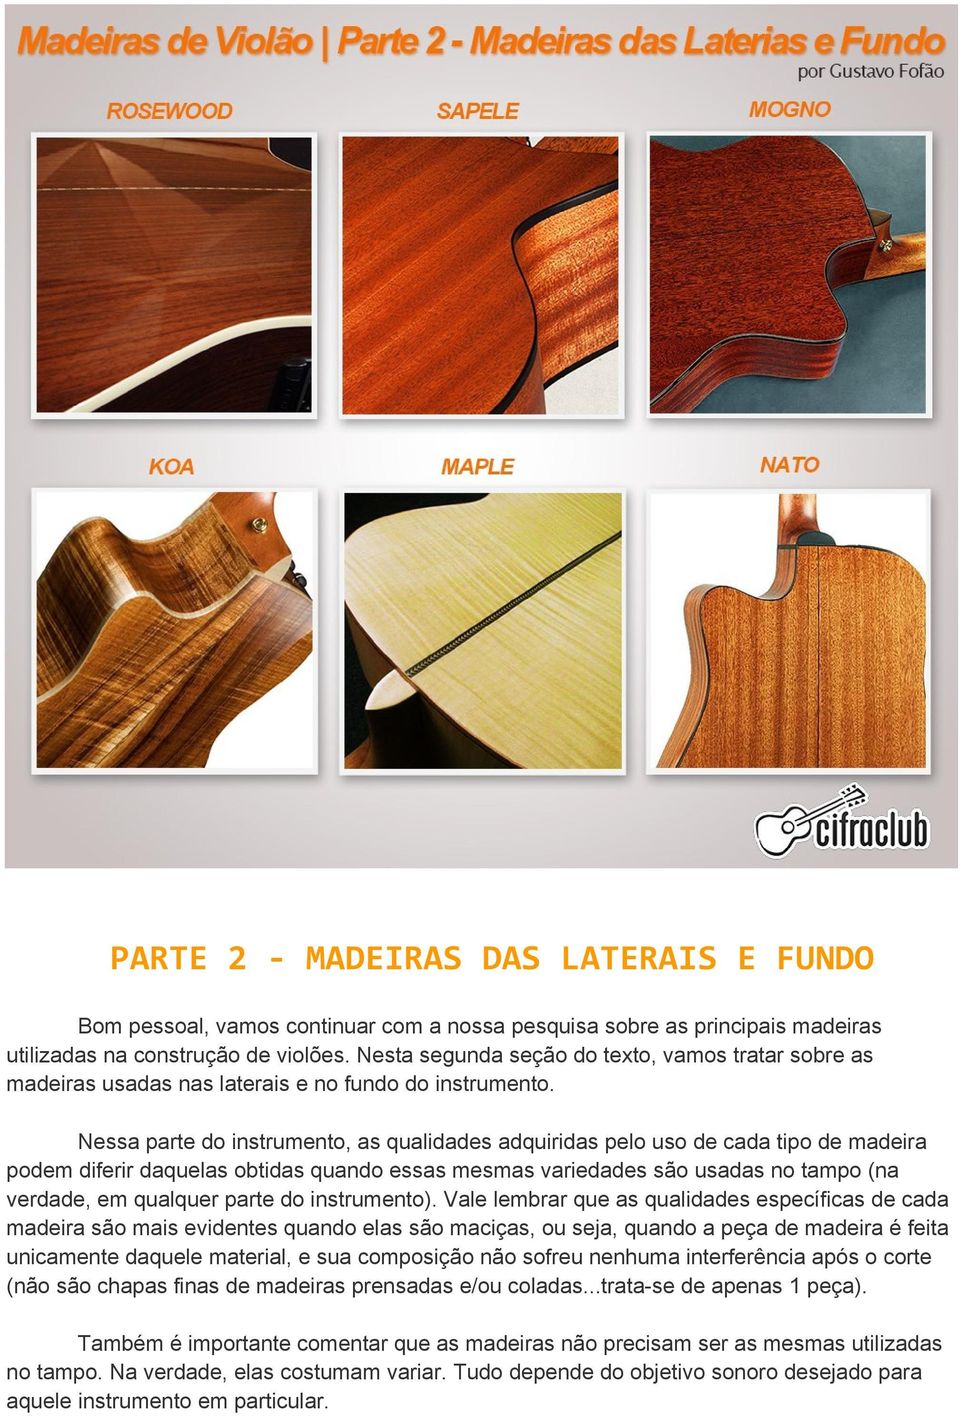 Nessa parte do instrumento, as qualidades adquiridas pelo uso de cada tipo de madeira podem diferir daquelas obtidas quando essas mesmas variedades são usadas no tampo (na verdade, em qualquer parte